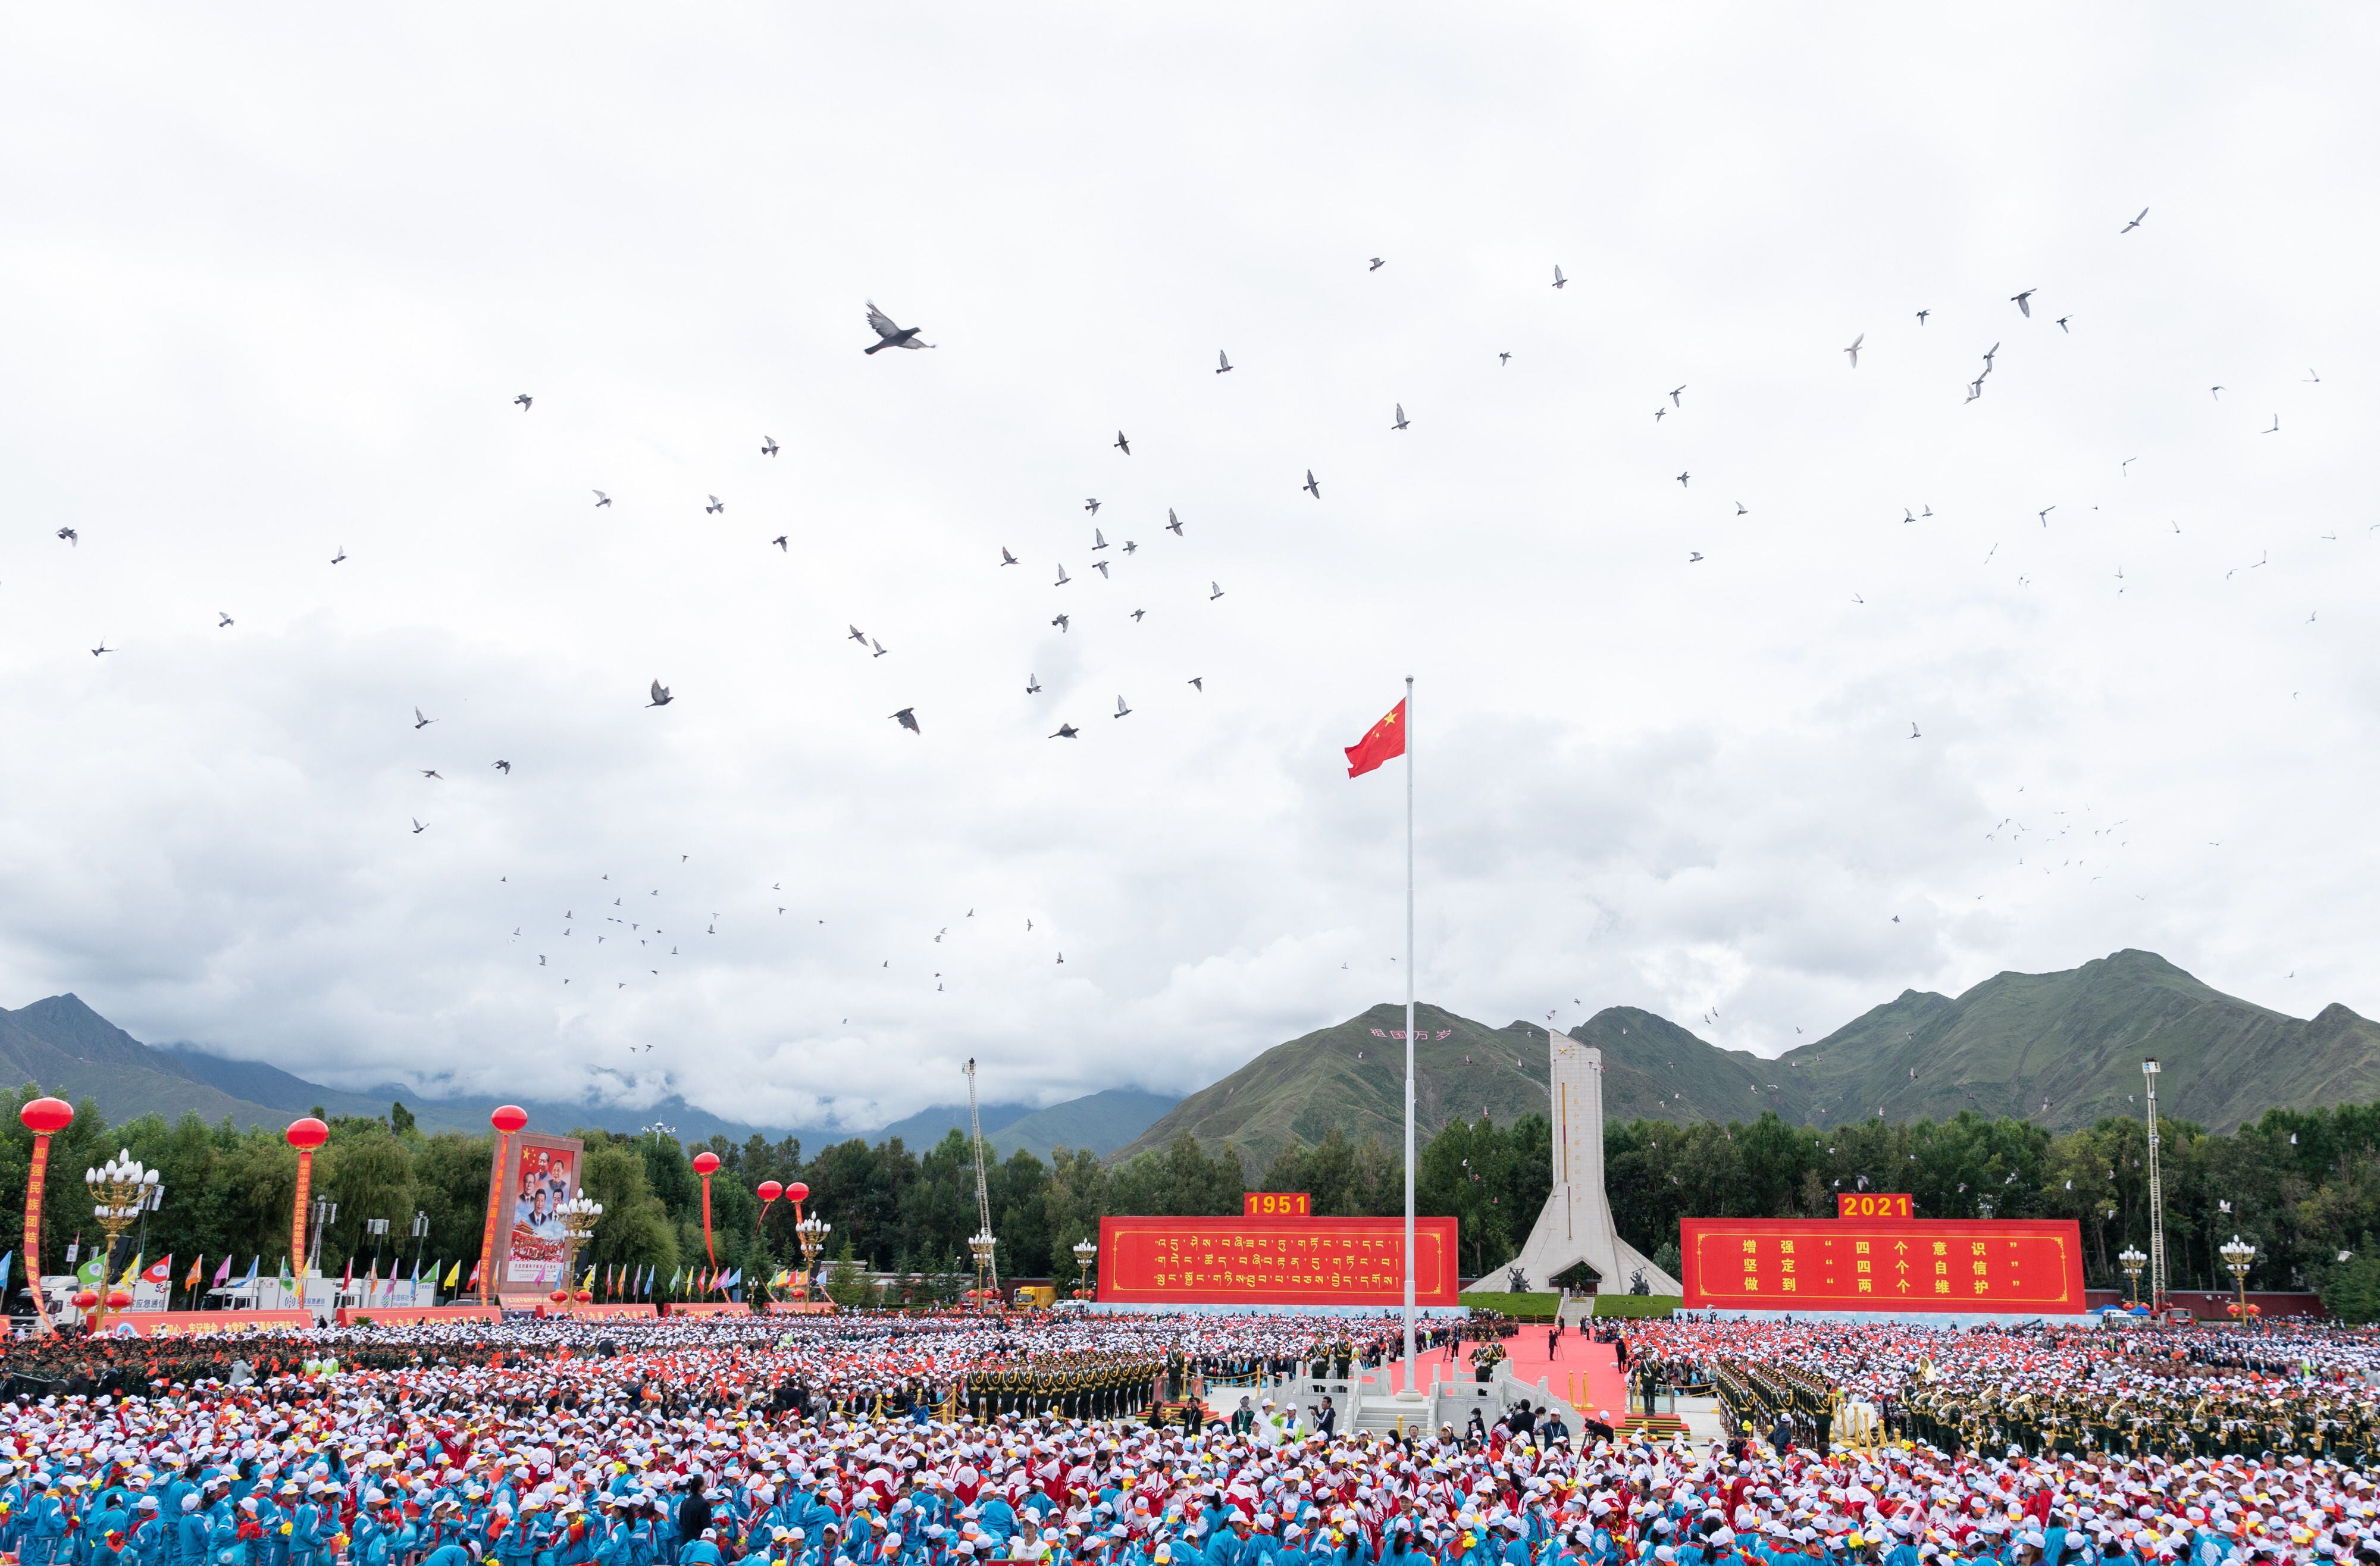 (210819) -- LHASA, 19 agosto, 2021 (Xinhua) -- Palomas vuelan en el cielo durante una gran reunión para conmemorar el 70° aniversario de la liberación pacífica del Tíbet en la plaza del Palacio de Potala, en Lhasa, en la región autónoma del Tíbet, en el suroeste de China, el 19 de agosto de 2021. Más de 20.000 personas de diversos grupos étnicos asistieron al evento celebrado en Lhasa. (Xinhua/Zhai Jianlan) (ah) (da) (vf)
